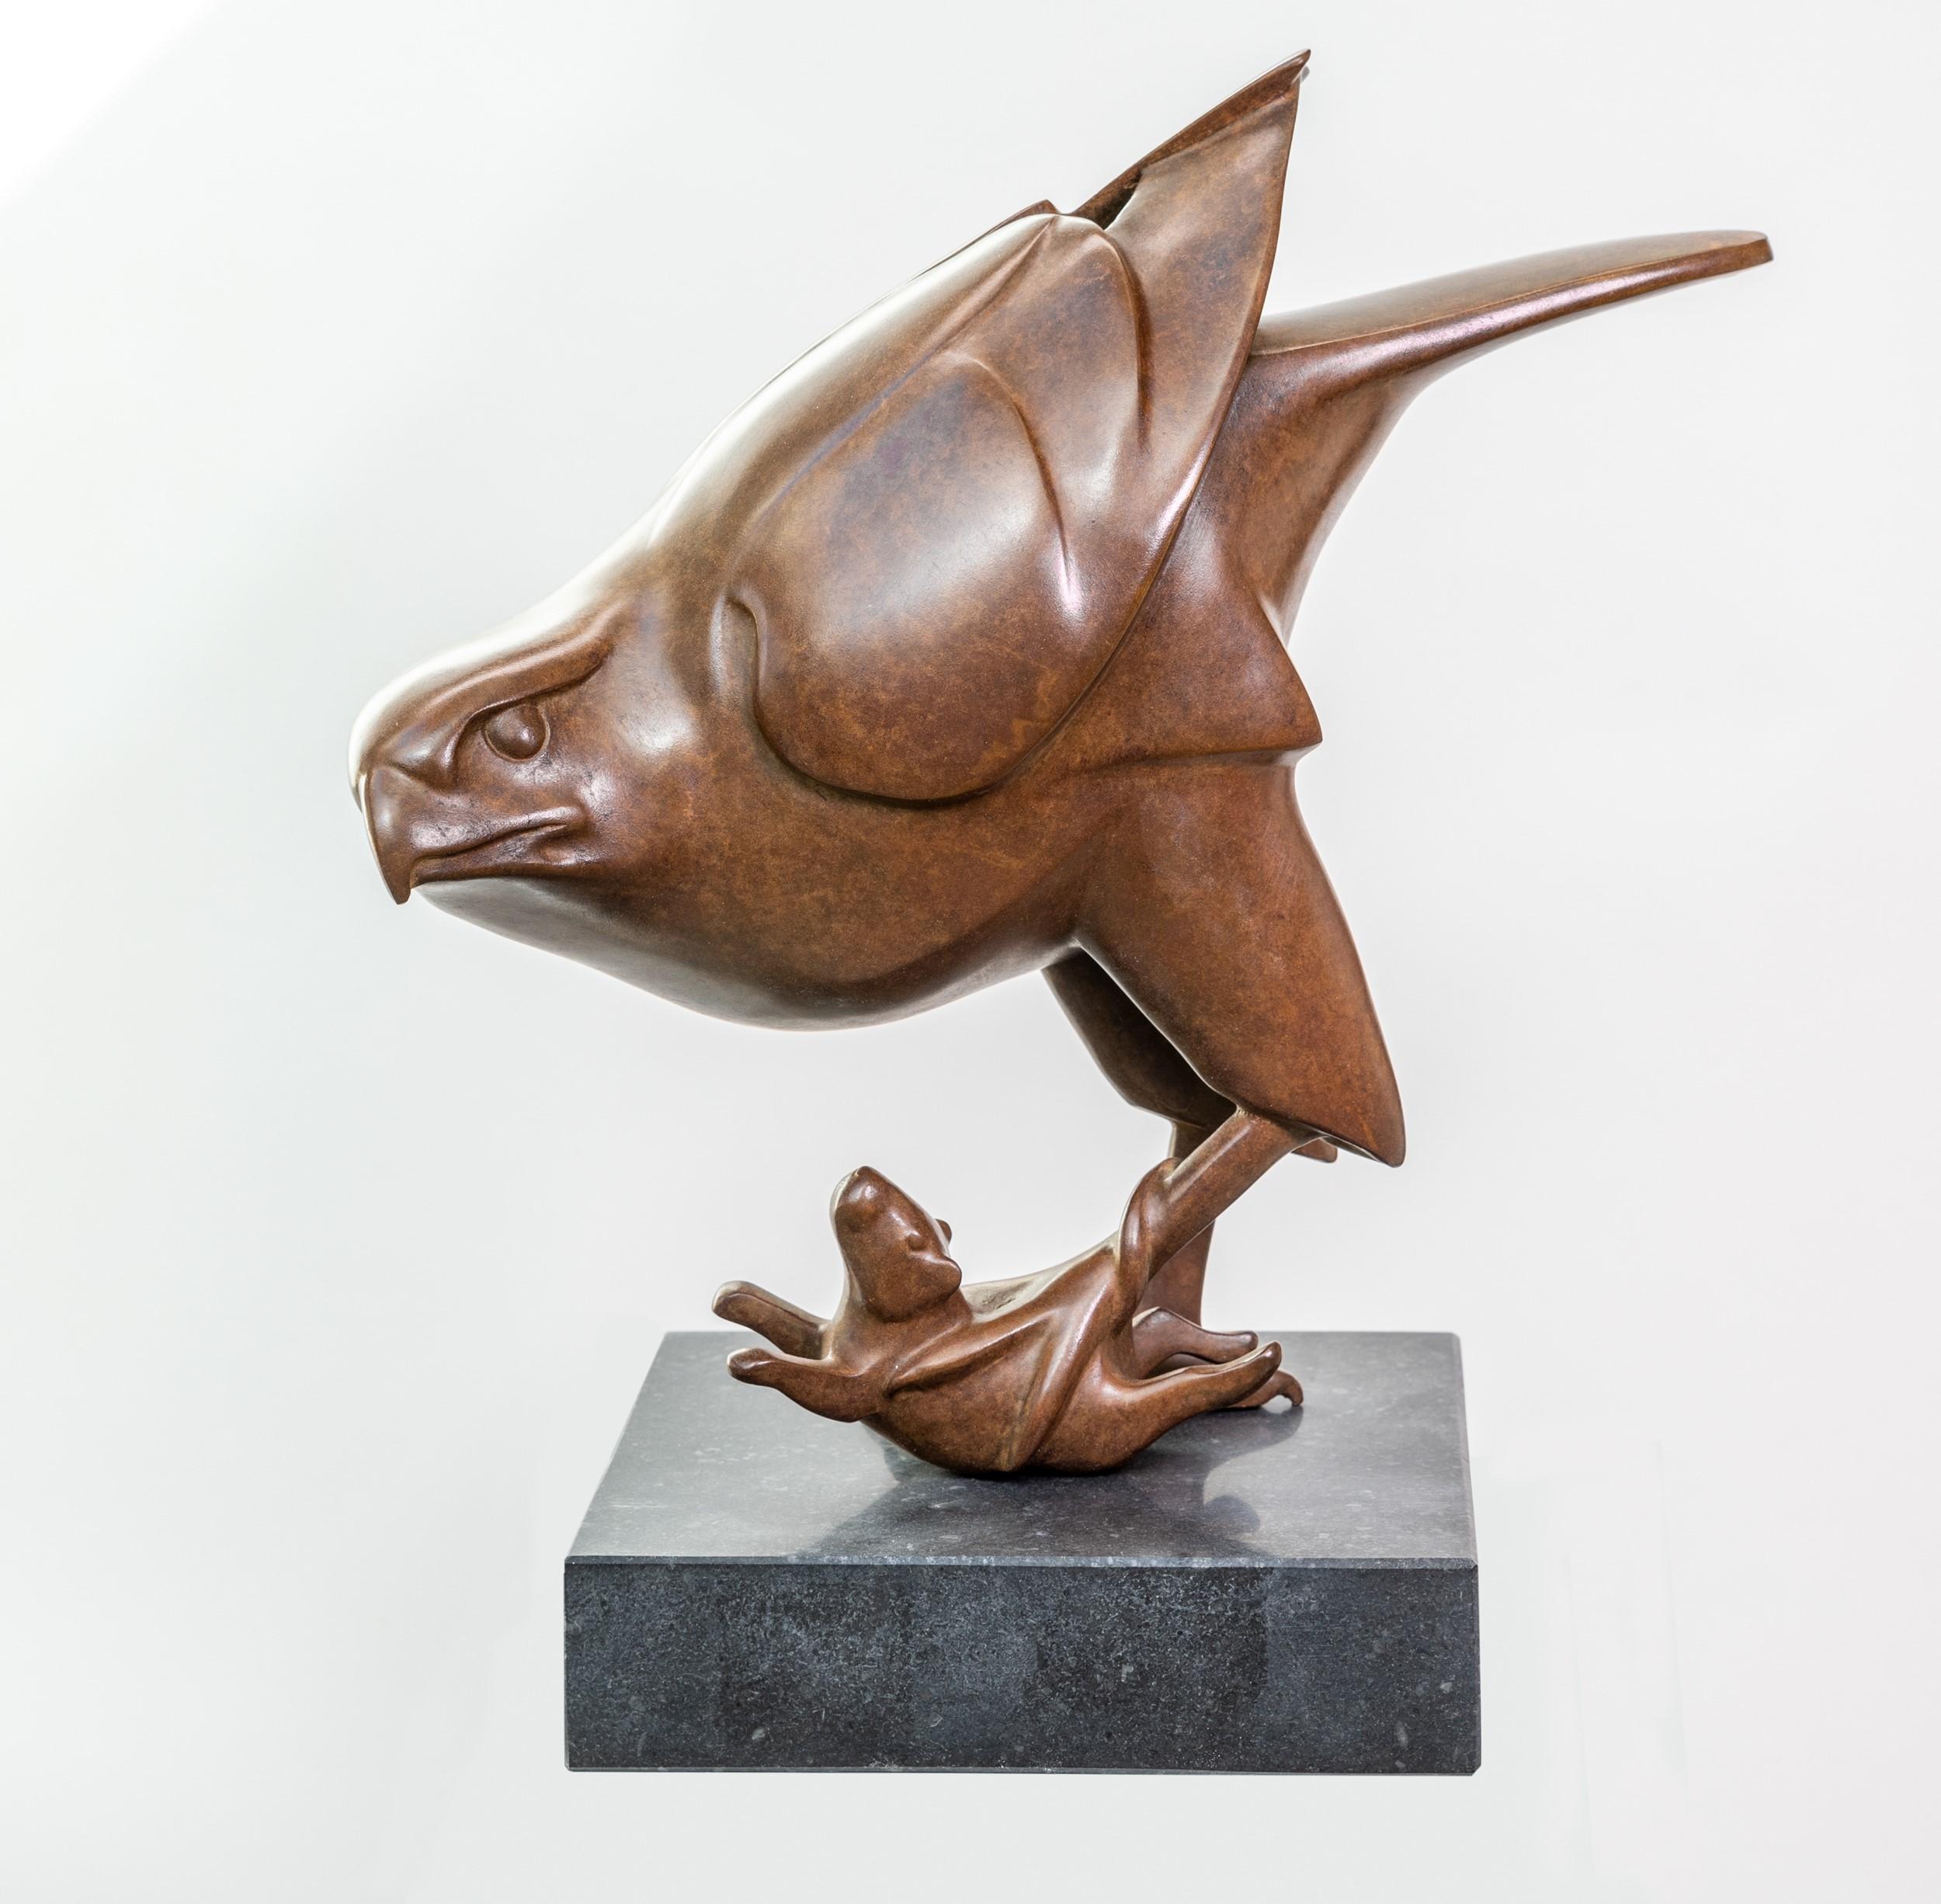 Roofvogel traf Muis Prey Vogel mit Maus Bronzeskulptur Limitierte Auflage  – Sculpture von Evert den Hartog